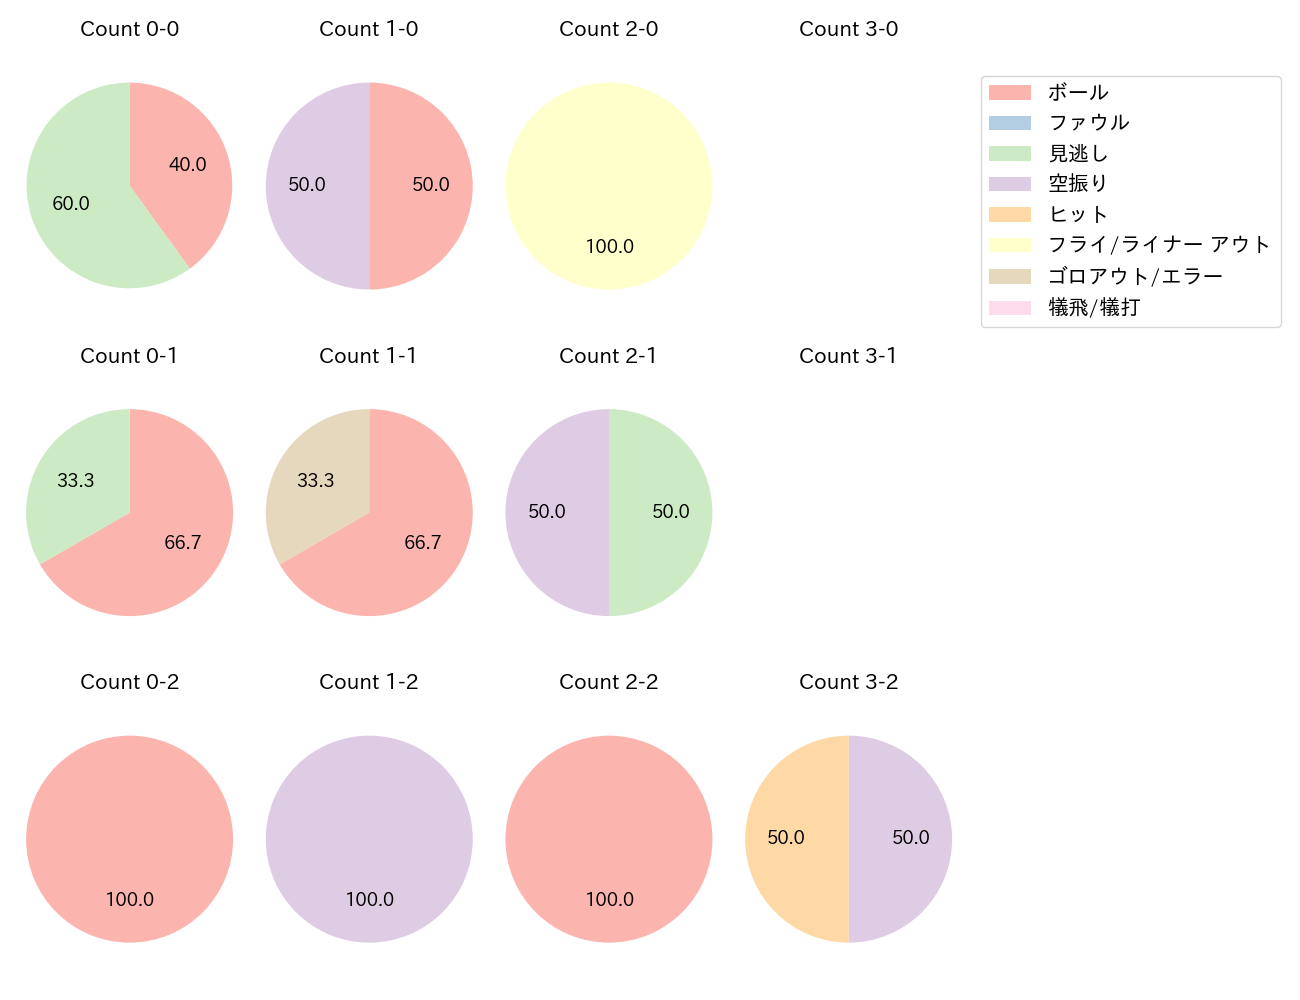 佐藤 直樹の球数分布(2022年4月)